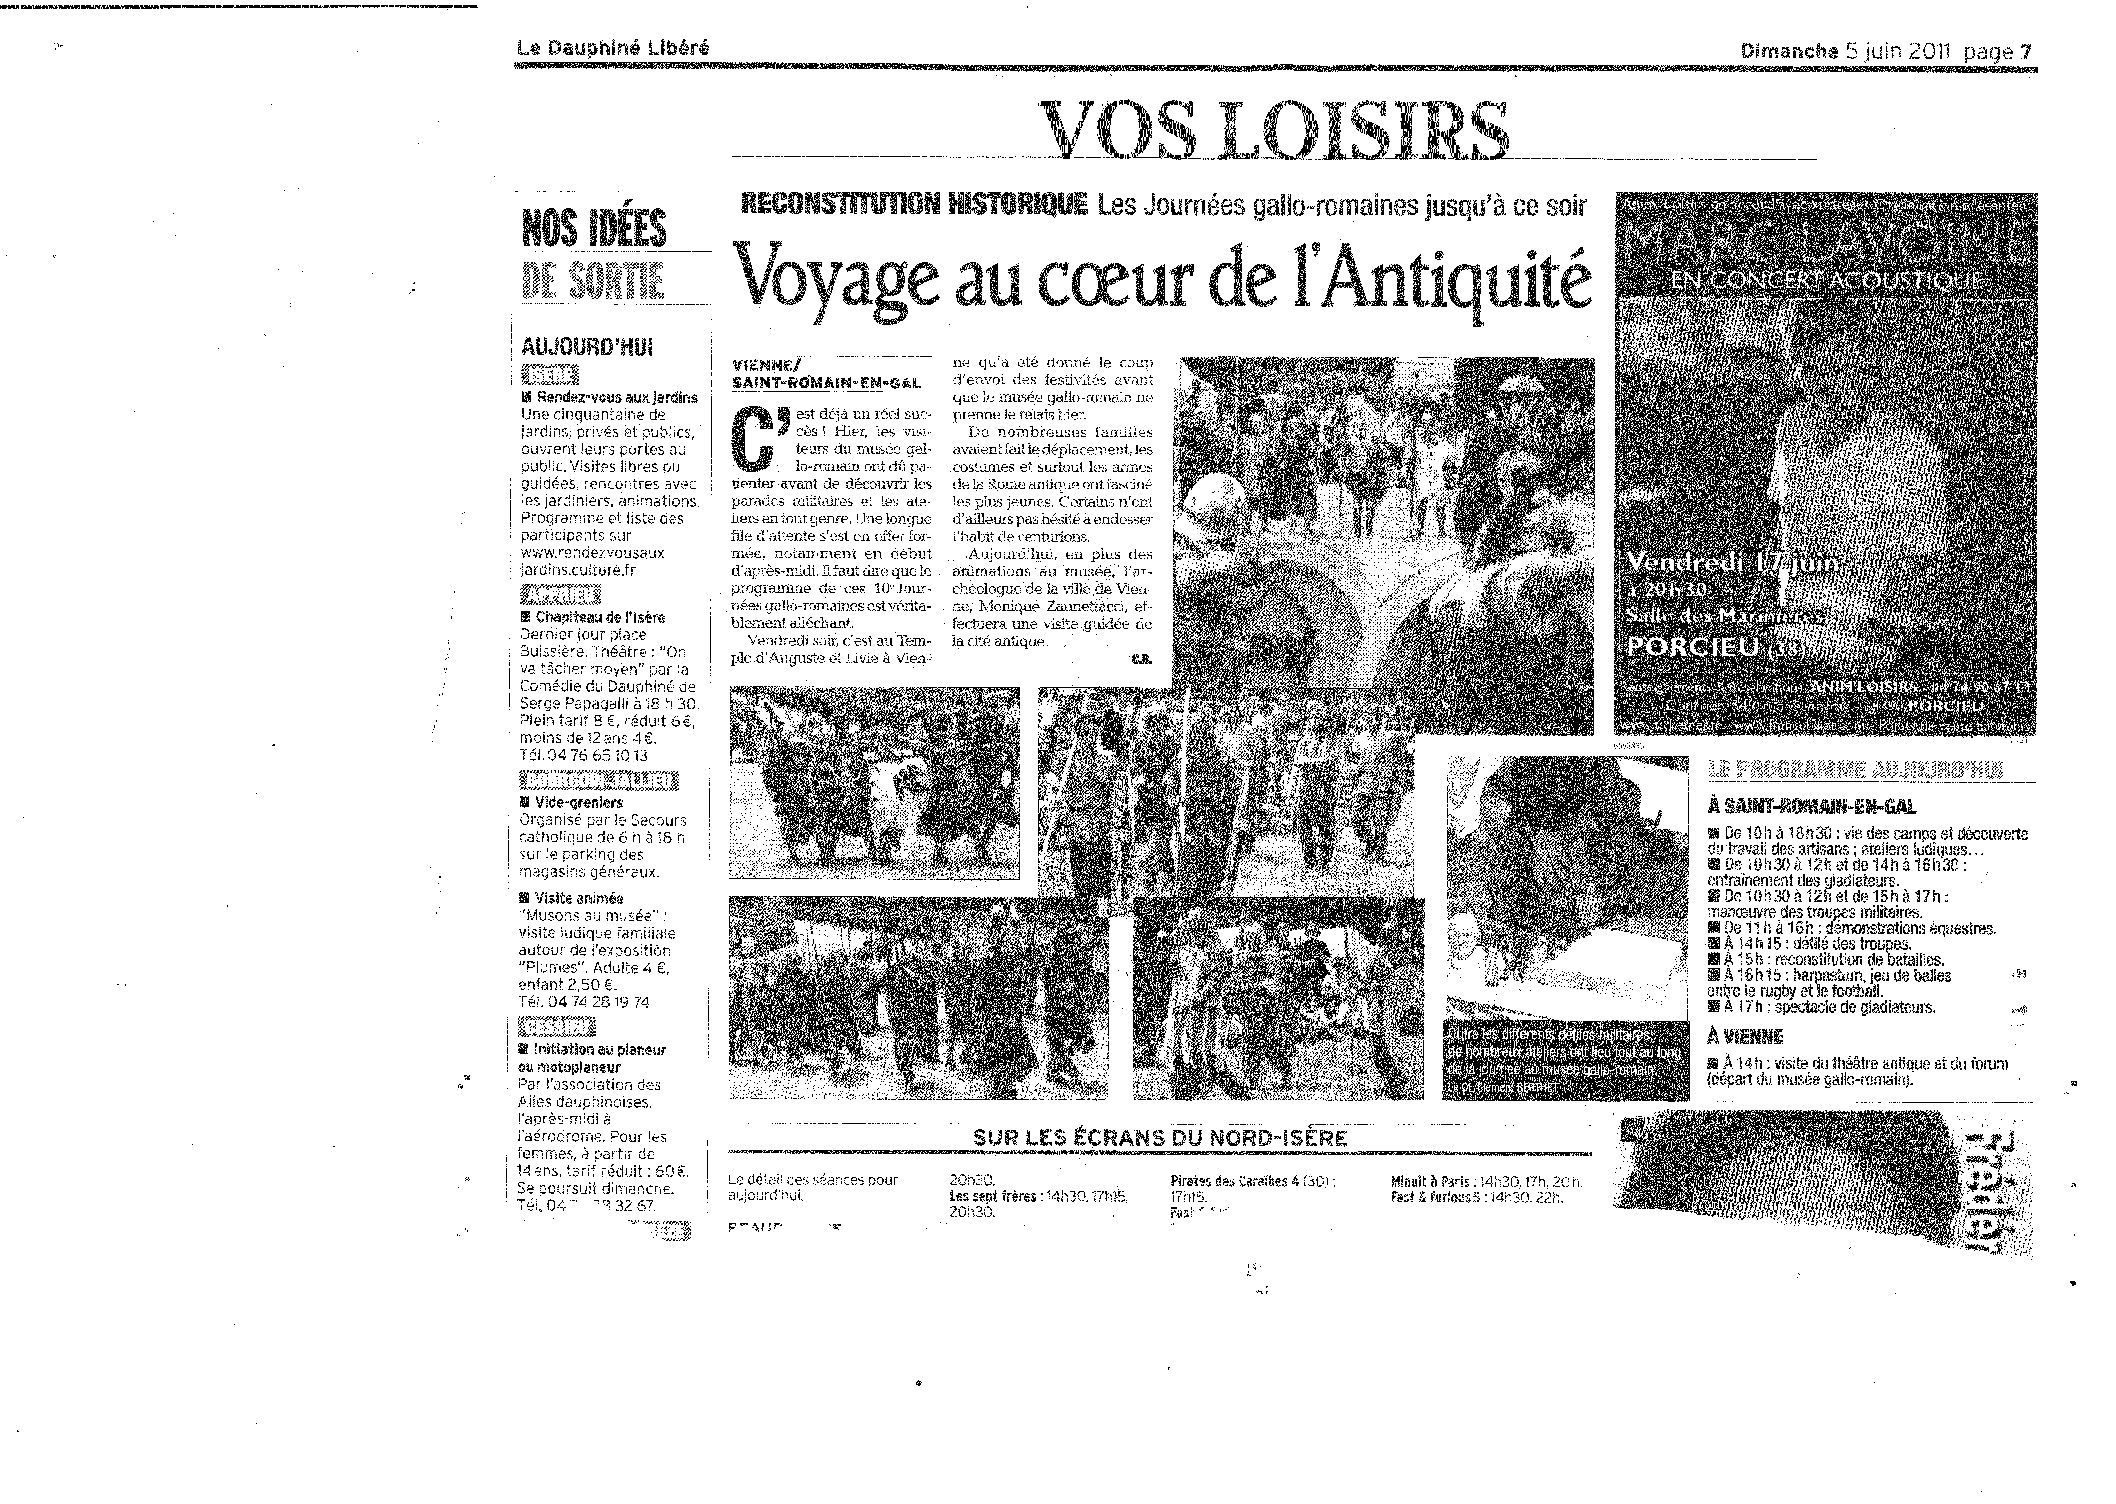 Le Dauphiné Libéré (dimanche 5 juin 2011. Page 7)